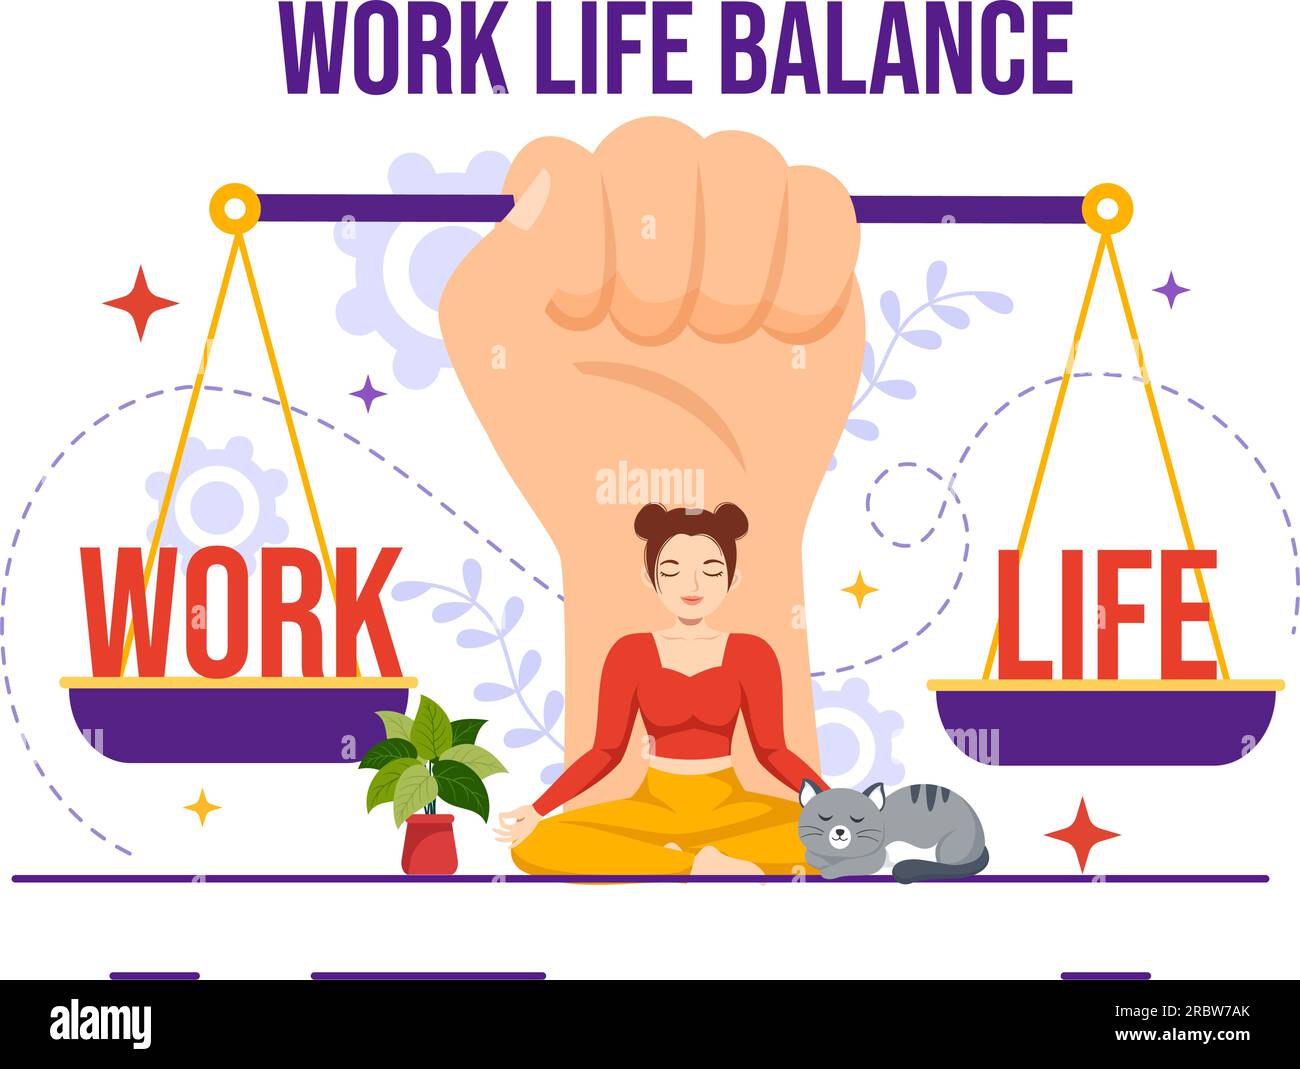 Equilibrio trabajo vida Imágenes vectoriales de stock - Página 3 - Alamy